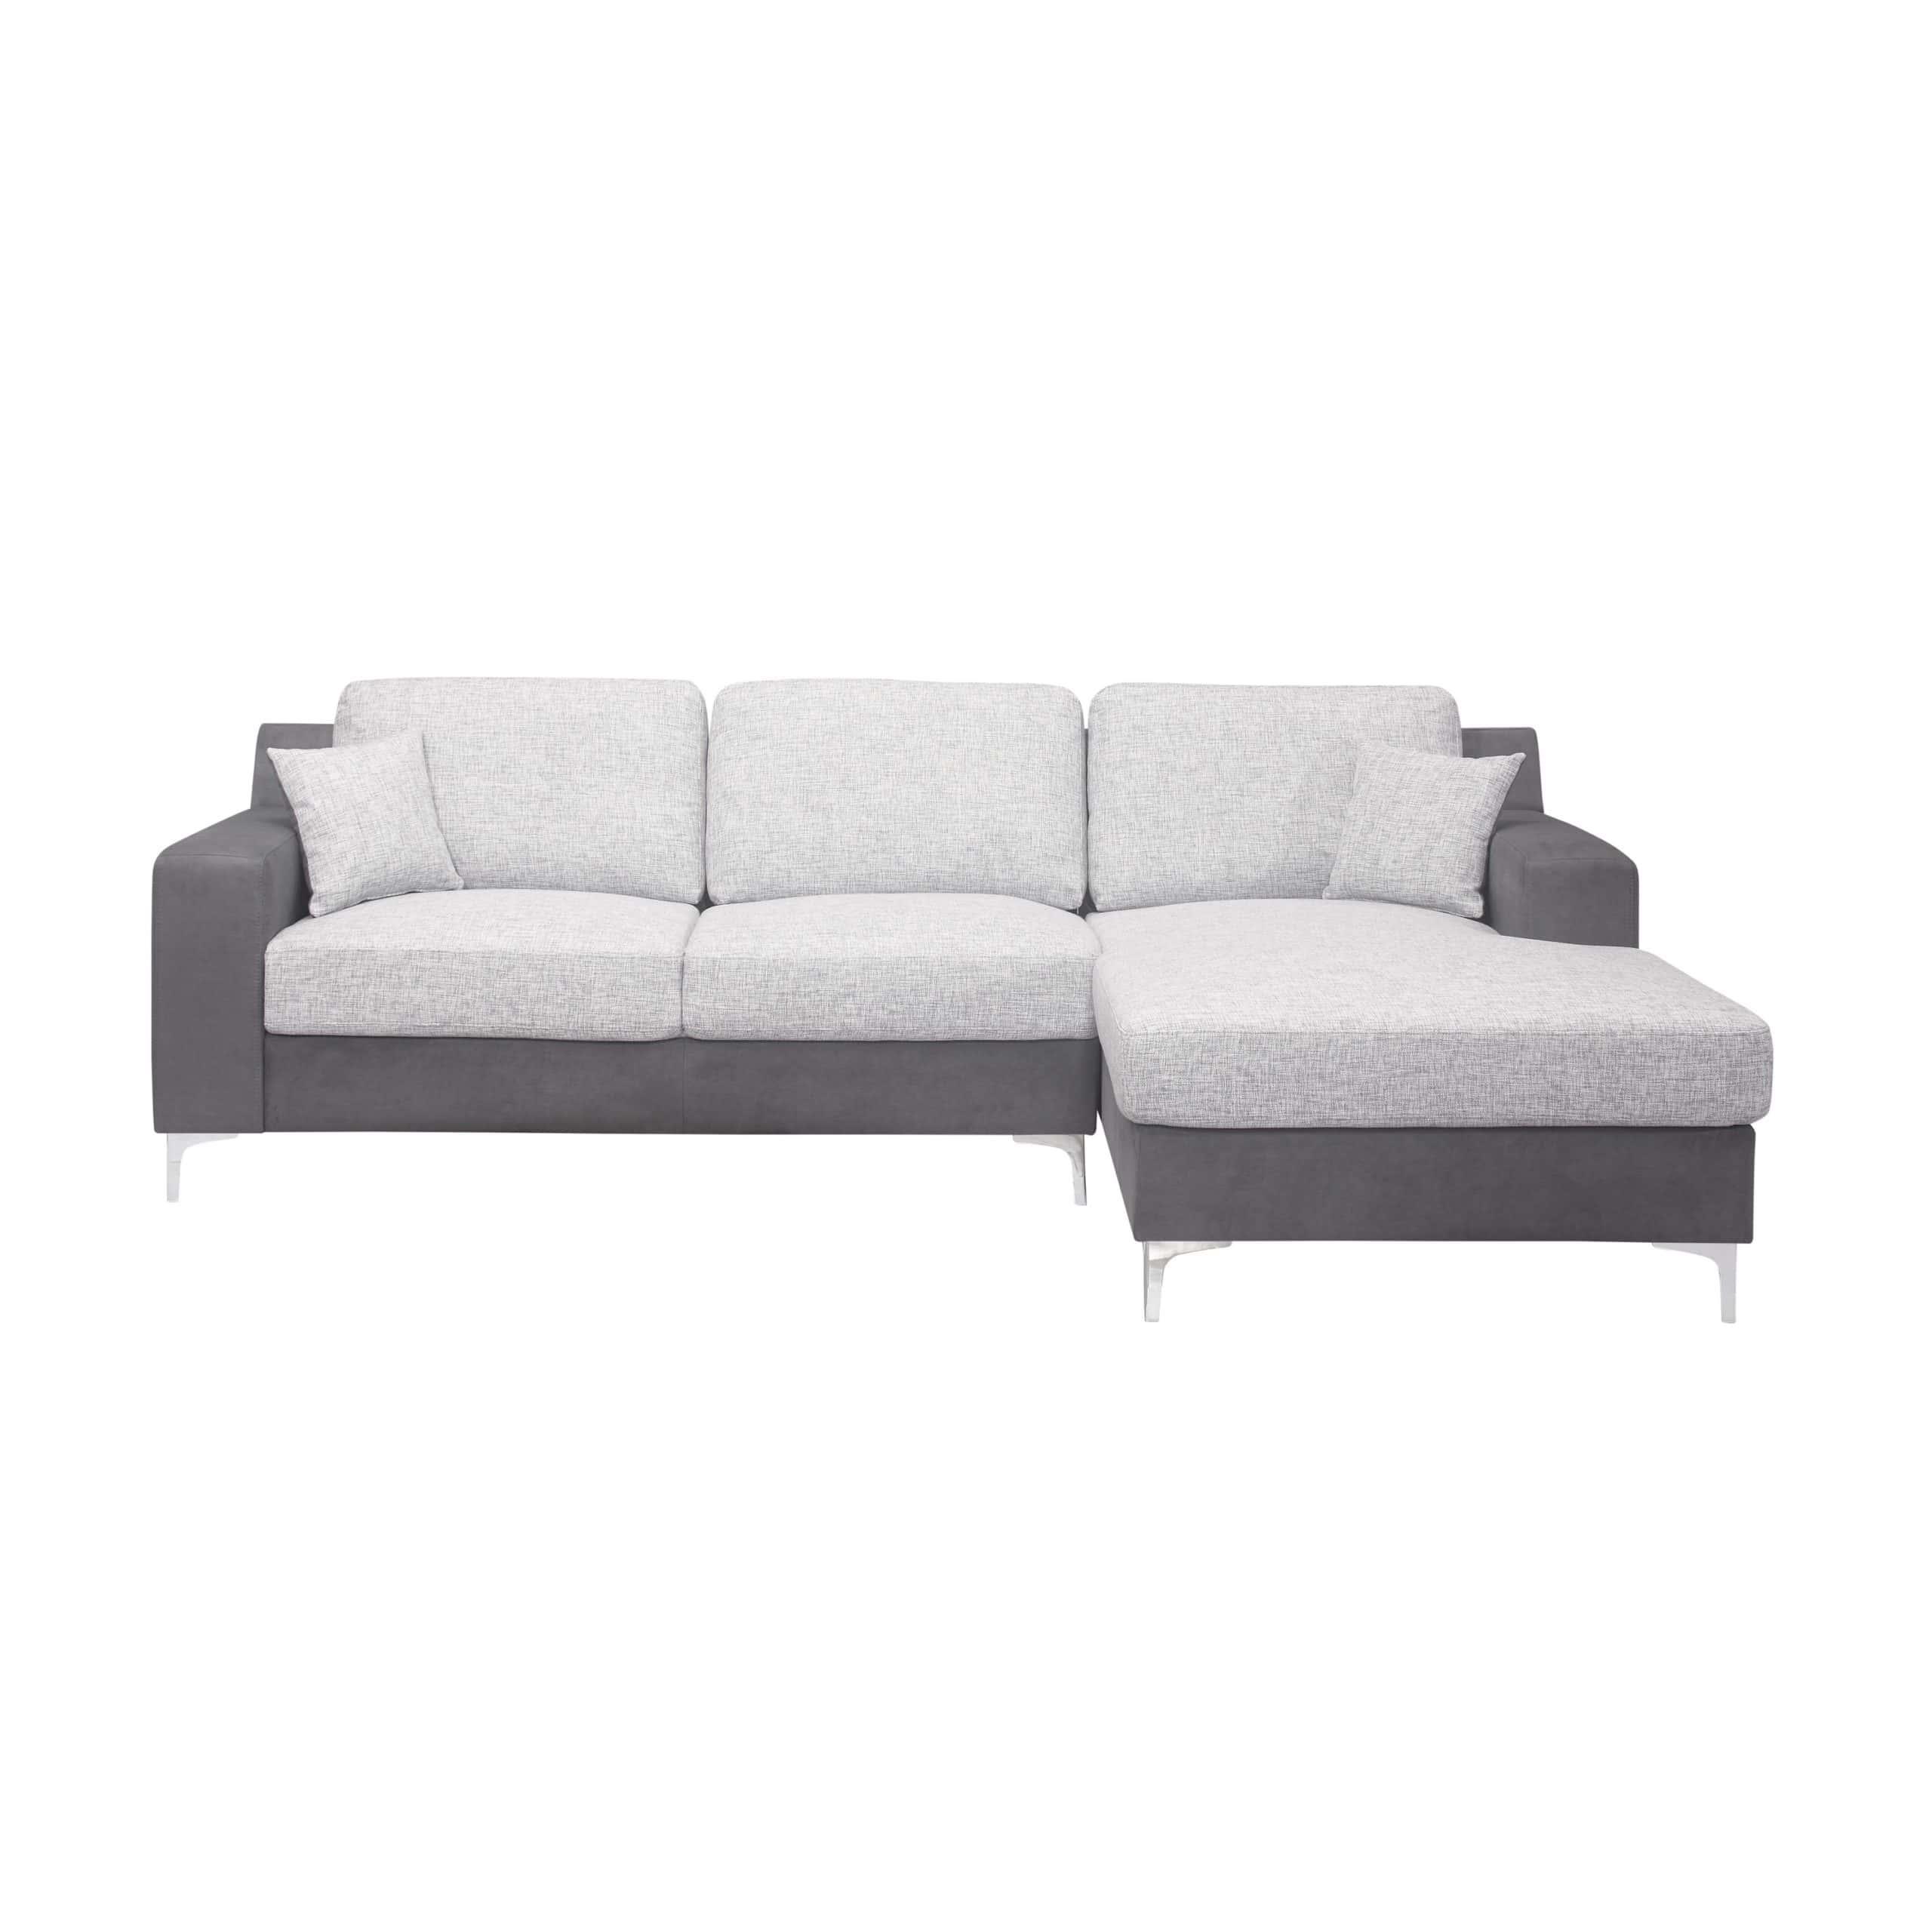 

    
U967 Contemporary  Light Gray/Dark Gray Sectional Sofa Global USA
